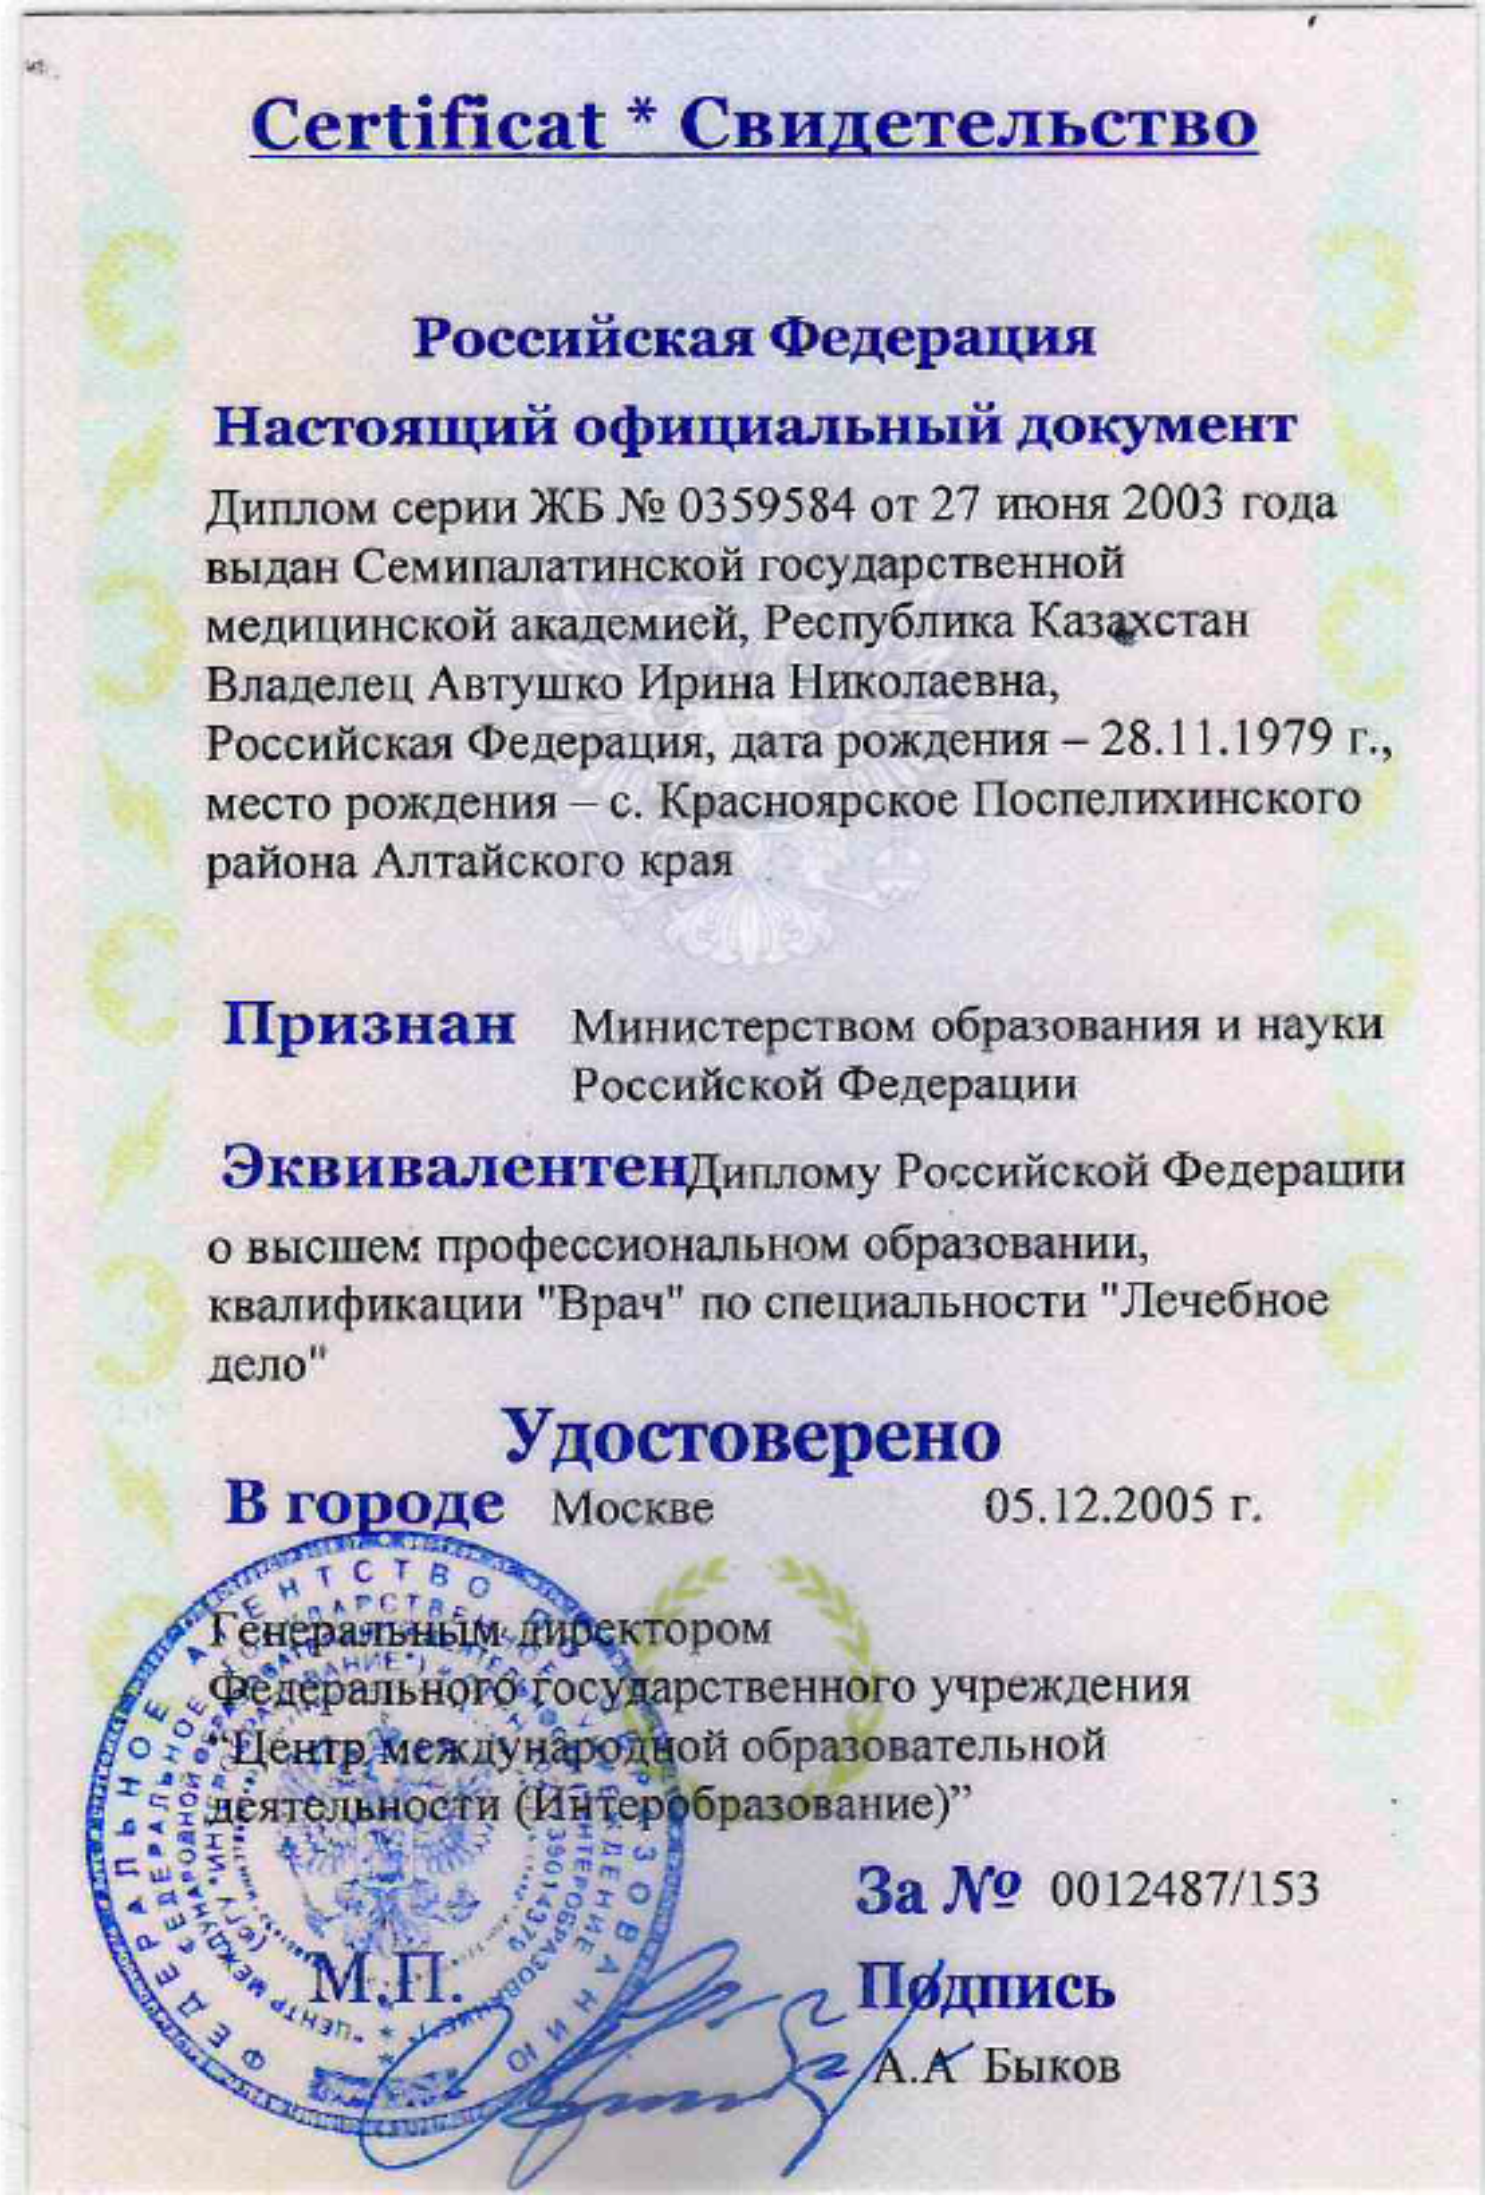 Свидетельство о действительности диплома на территории РФ 2005 г.